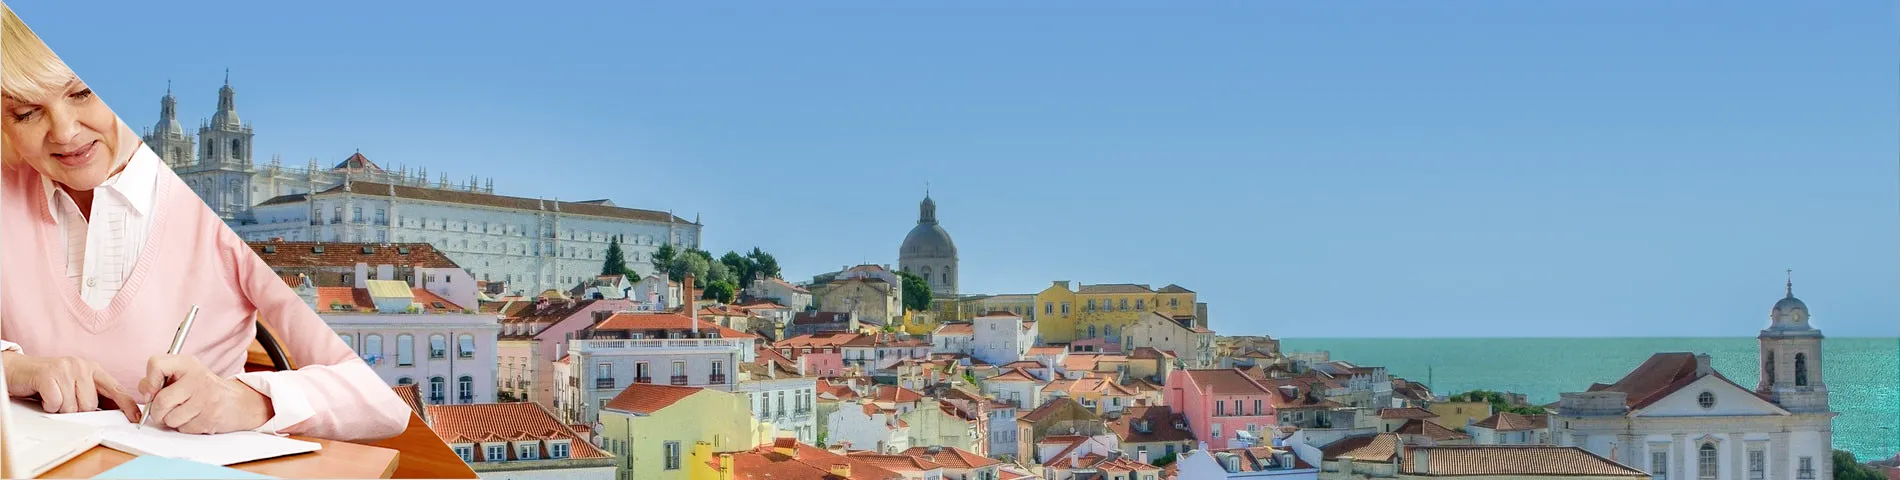 Lizbona - Senior (50 plus)